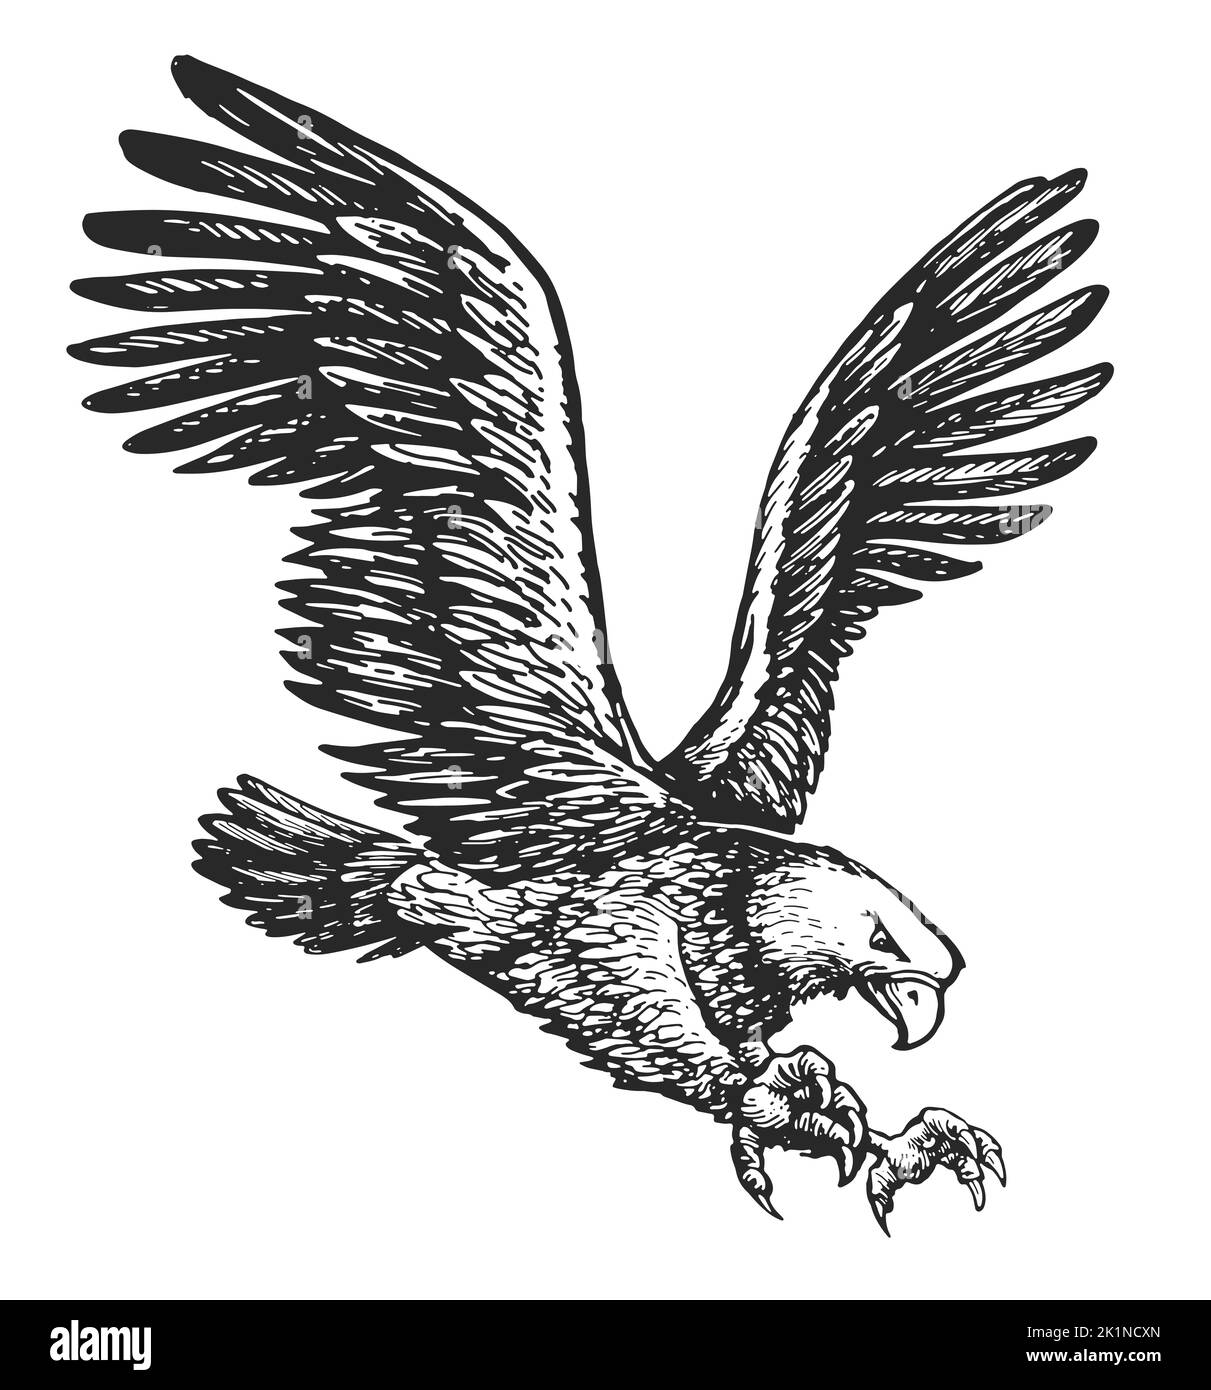 Aquila baldosa volante isolata su sfondo bianco. Schizzo di uccelli animali. Illustrazione disegnata a mano in stile di incisione vintage Foto Stock